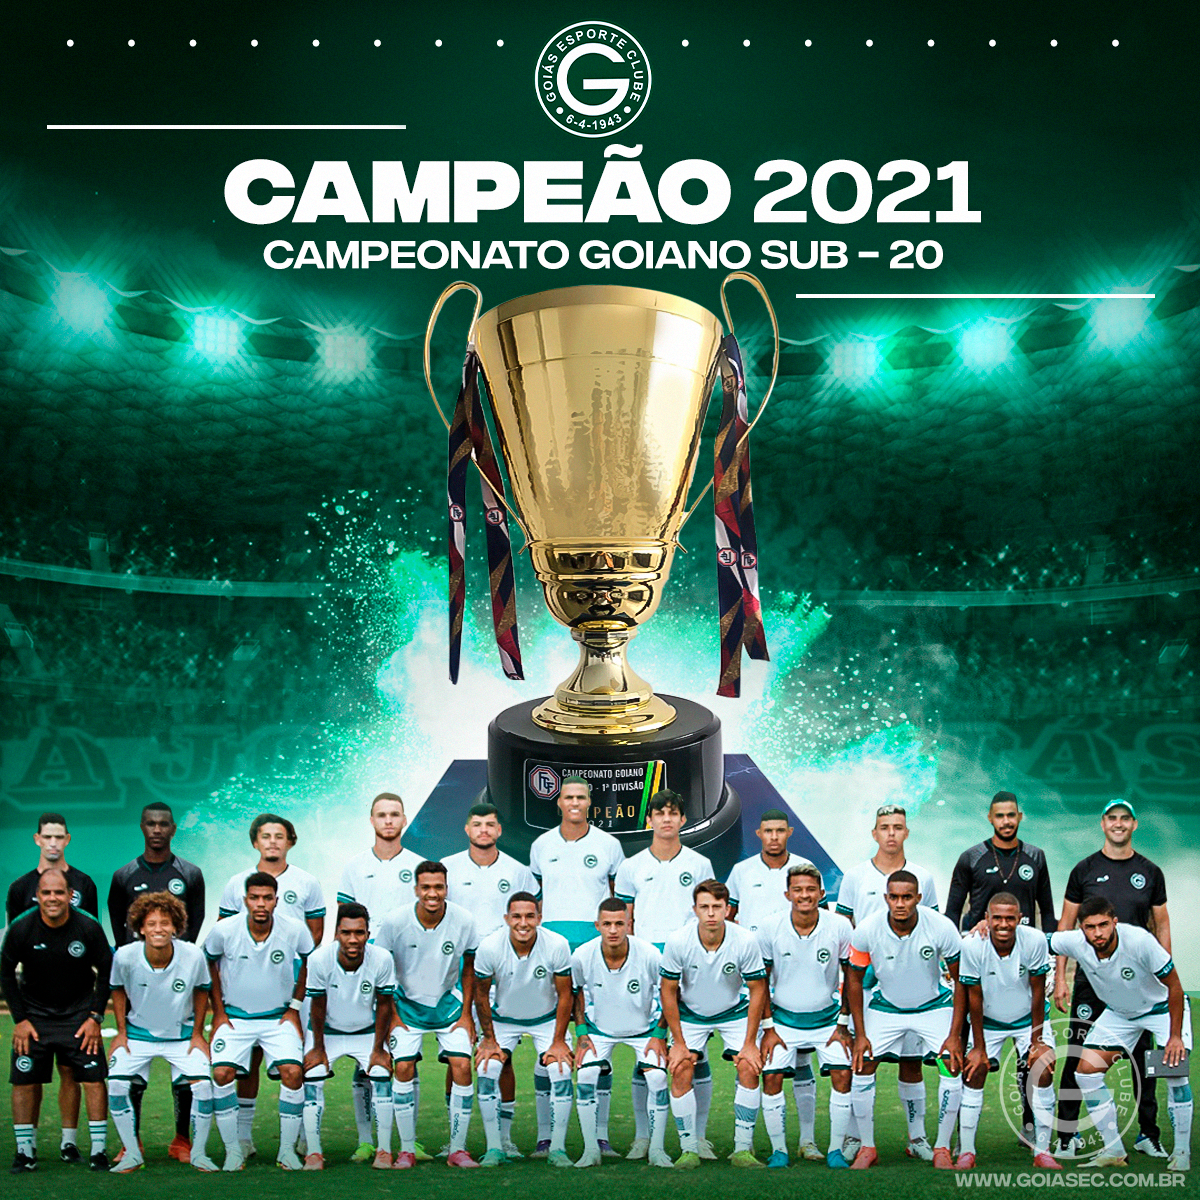 GOAL Brasil on X: Estes são todos os campeões da Copa do Brasil! Pode  marcar mais uma para o Palmeiras! 🇳🇬 É a quarta taça para o Verdão! E a  galeria de